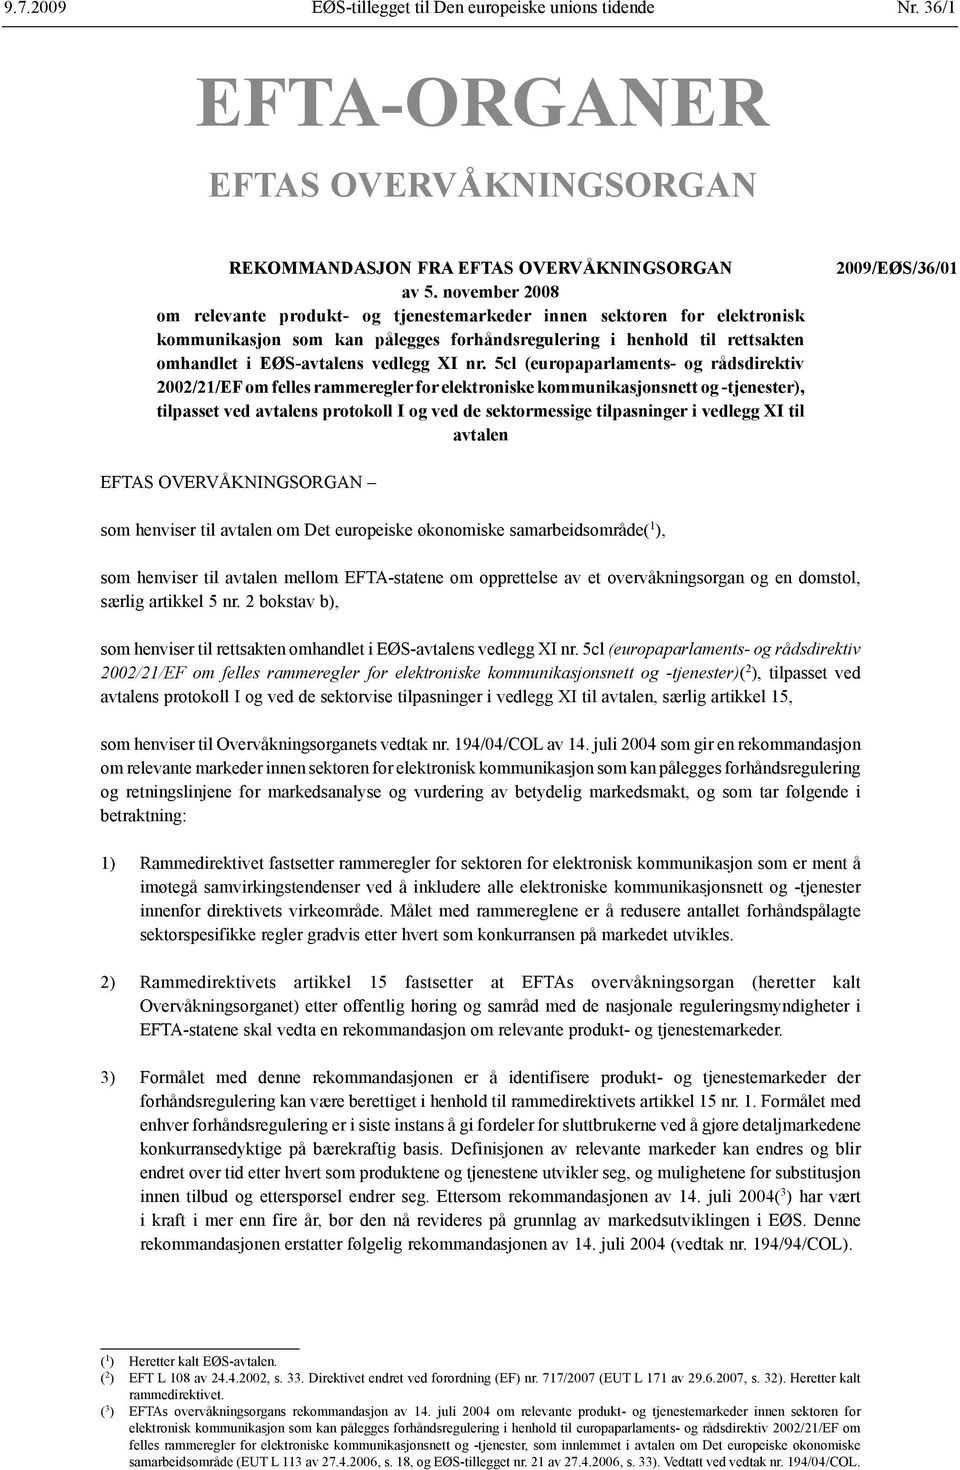 nr. 5cl (europaparlaments- og rådsdirektiv 2002/21/EF om felles rammeregler for elektroniske kommunikasjonsnett og tjenester), tilpasset ved avtalens protokoll I og ved de sektormessige tilpasninger